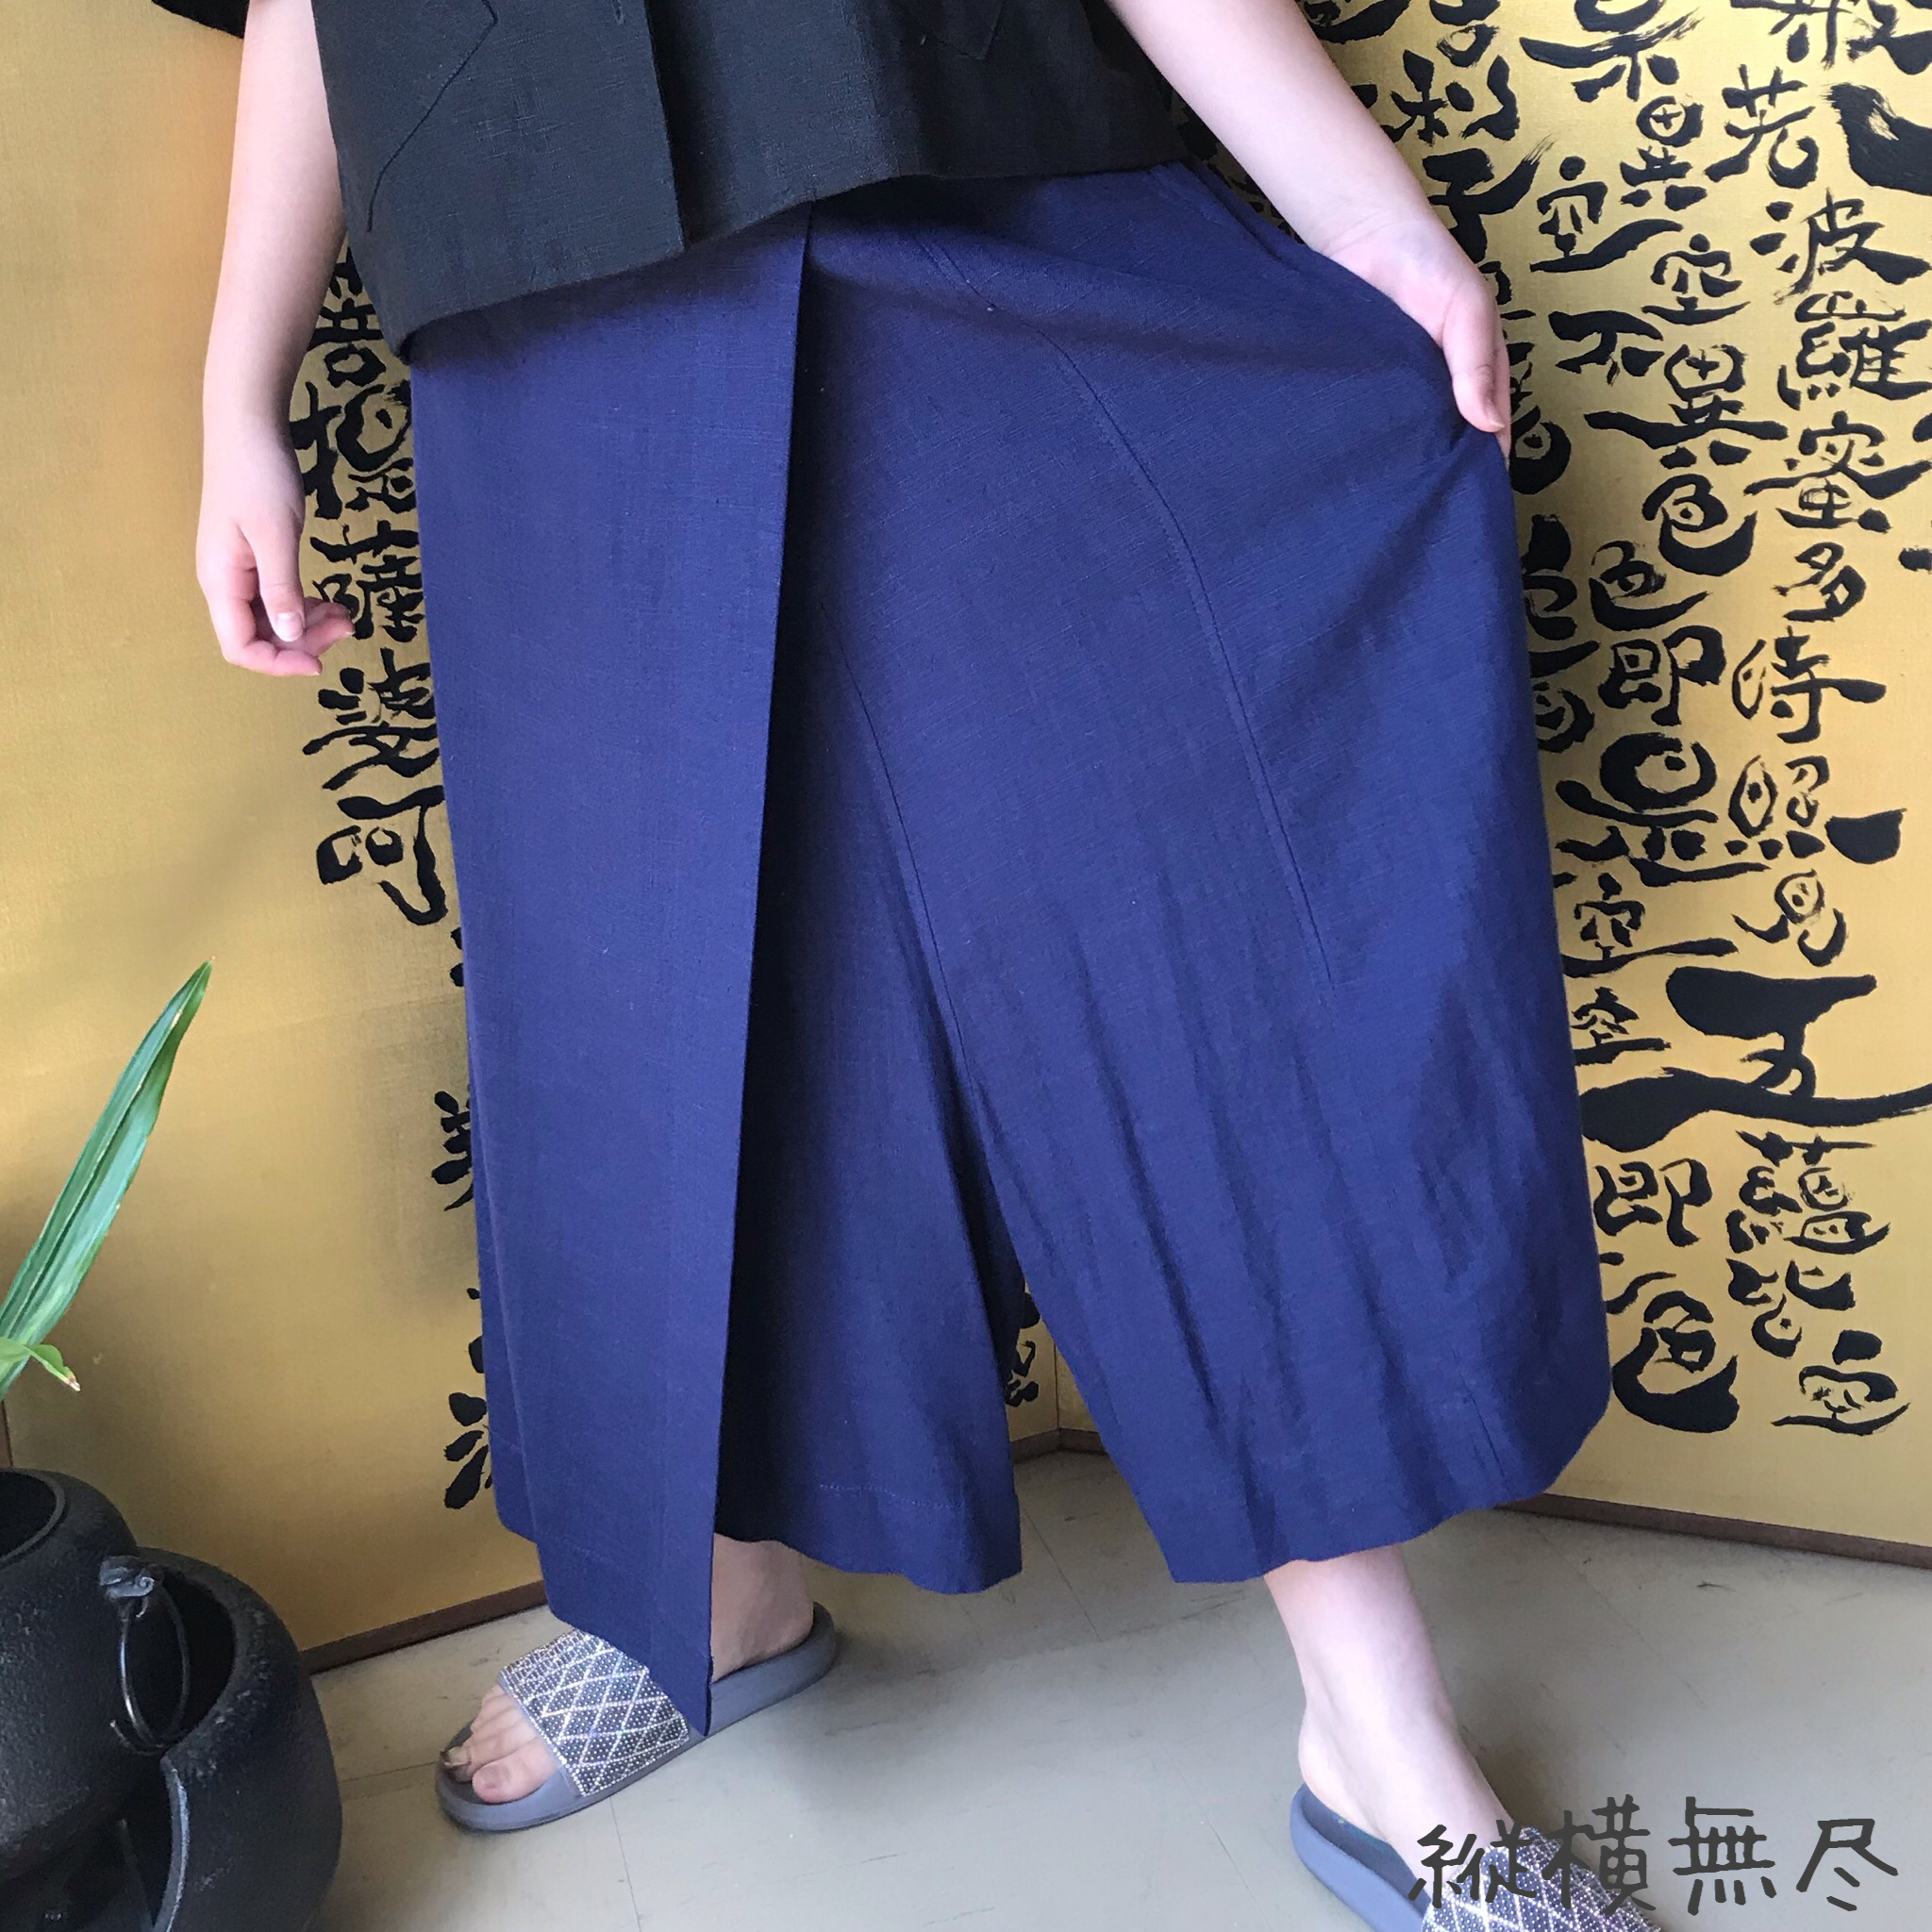 シルエットが綺麗な巻きスカート風ヘンプのパンツ 紺 Iichi ハンドメイド クラフト作品 手仕事品の通販